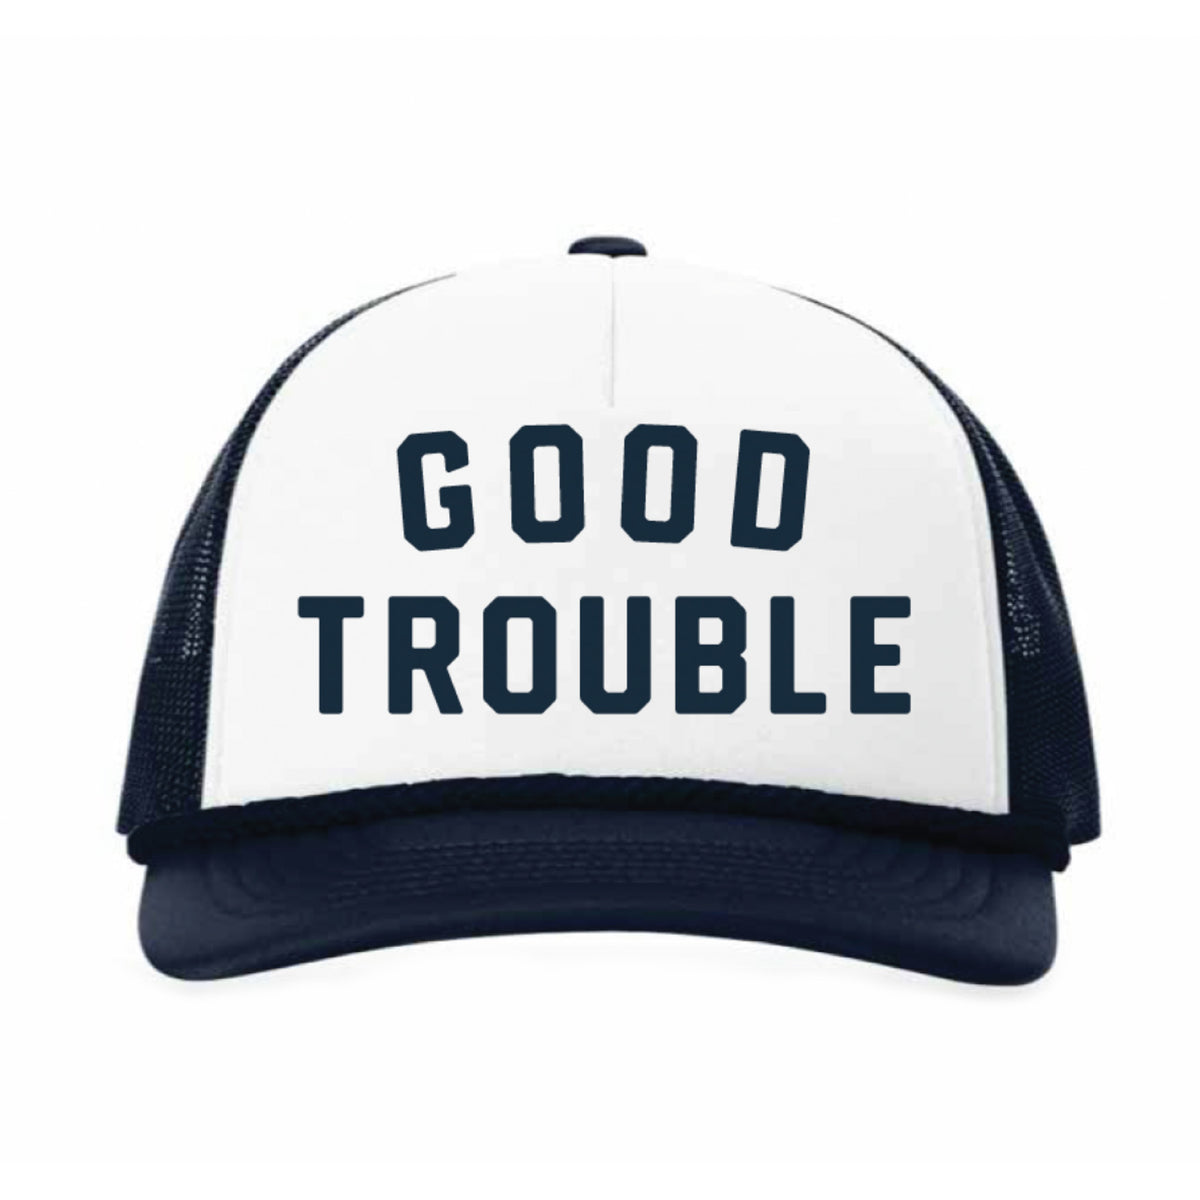 Good Trouble Trucker hat